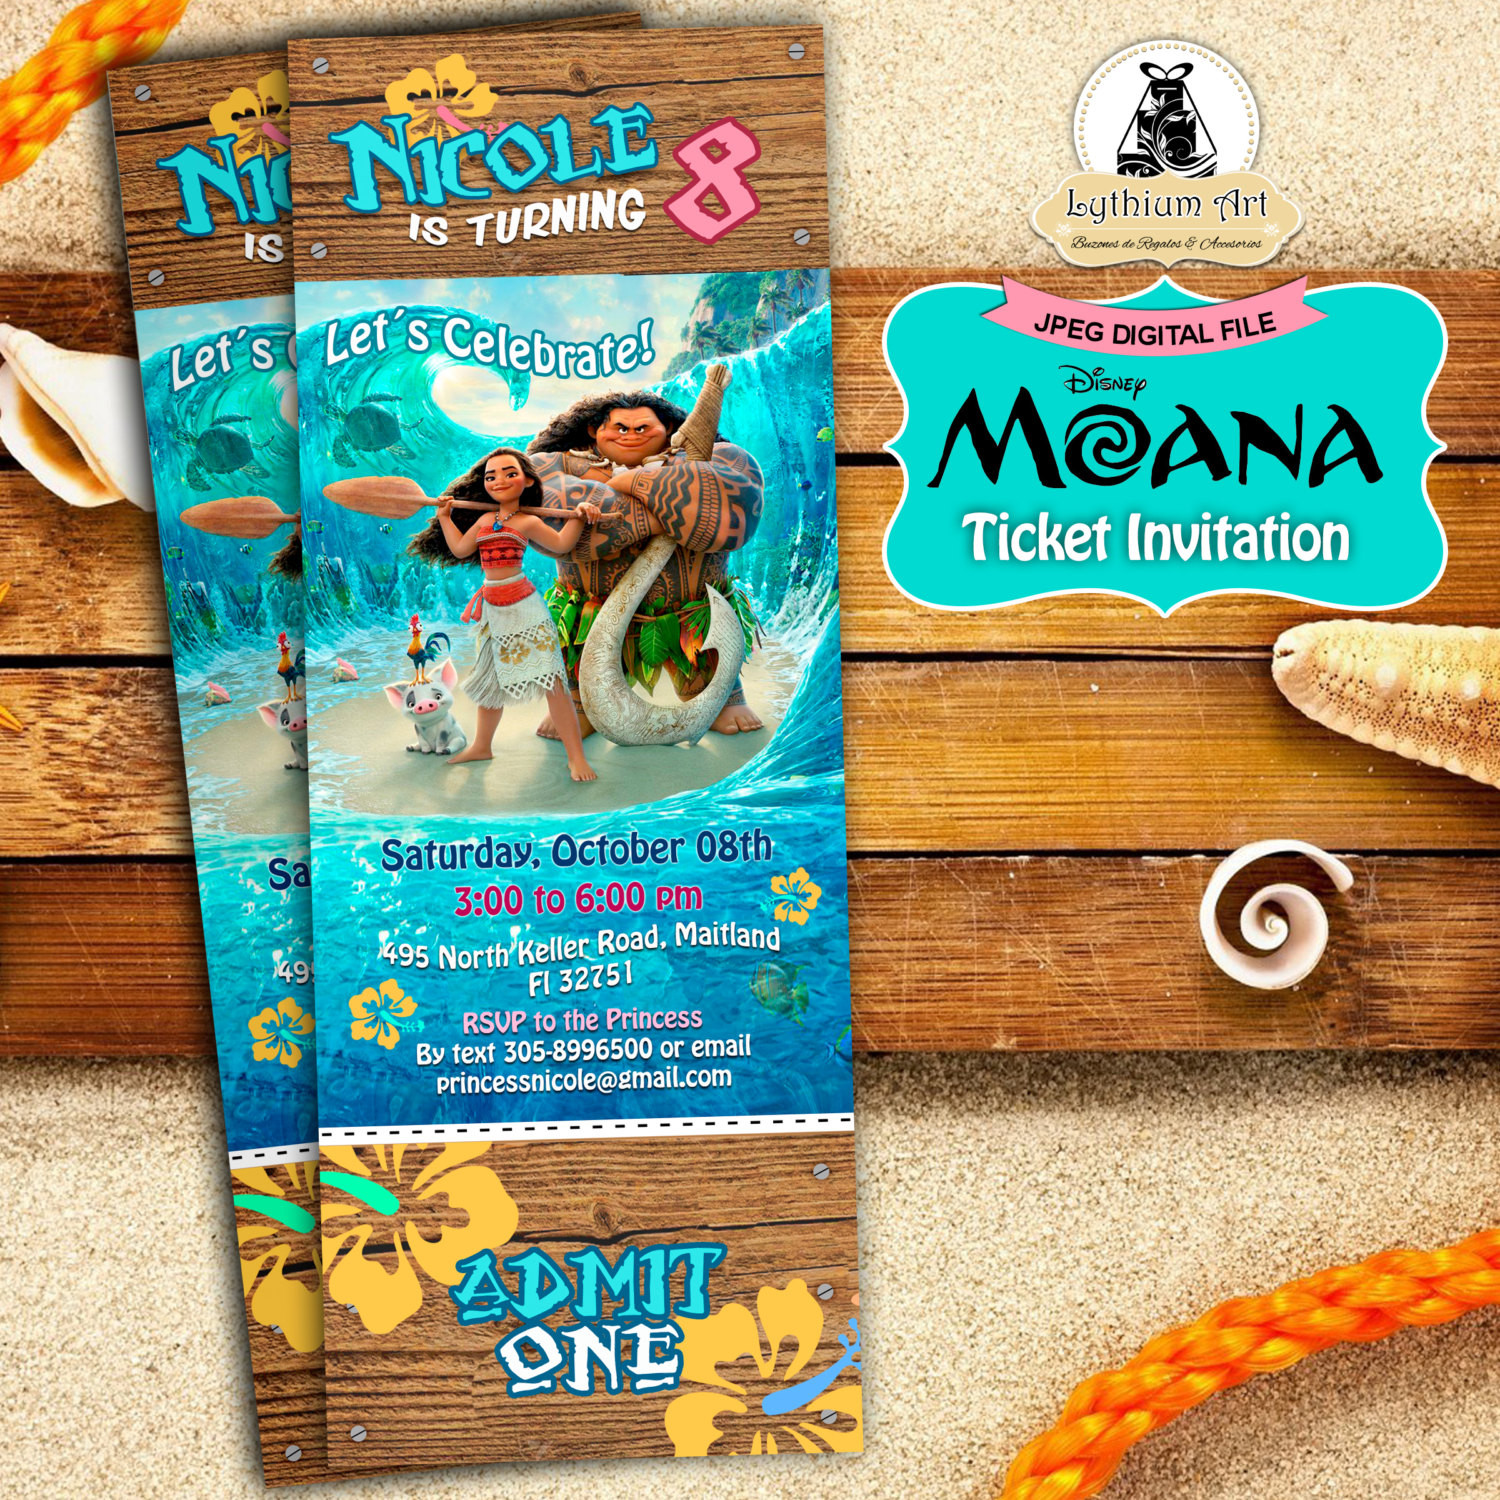 Best ideas about Moana Birthday Party Invitations
. Save or Pin Moana Ticket Invitation Moana Birthday Party Disney Moana Now.